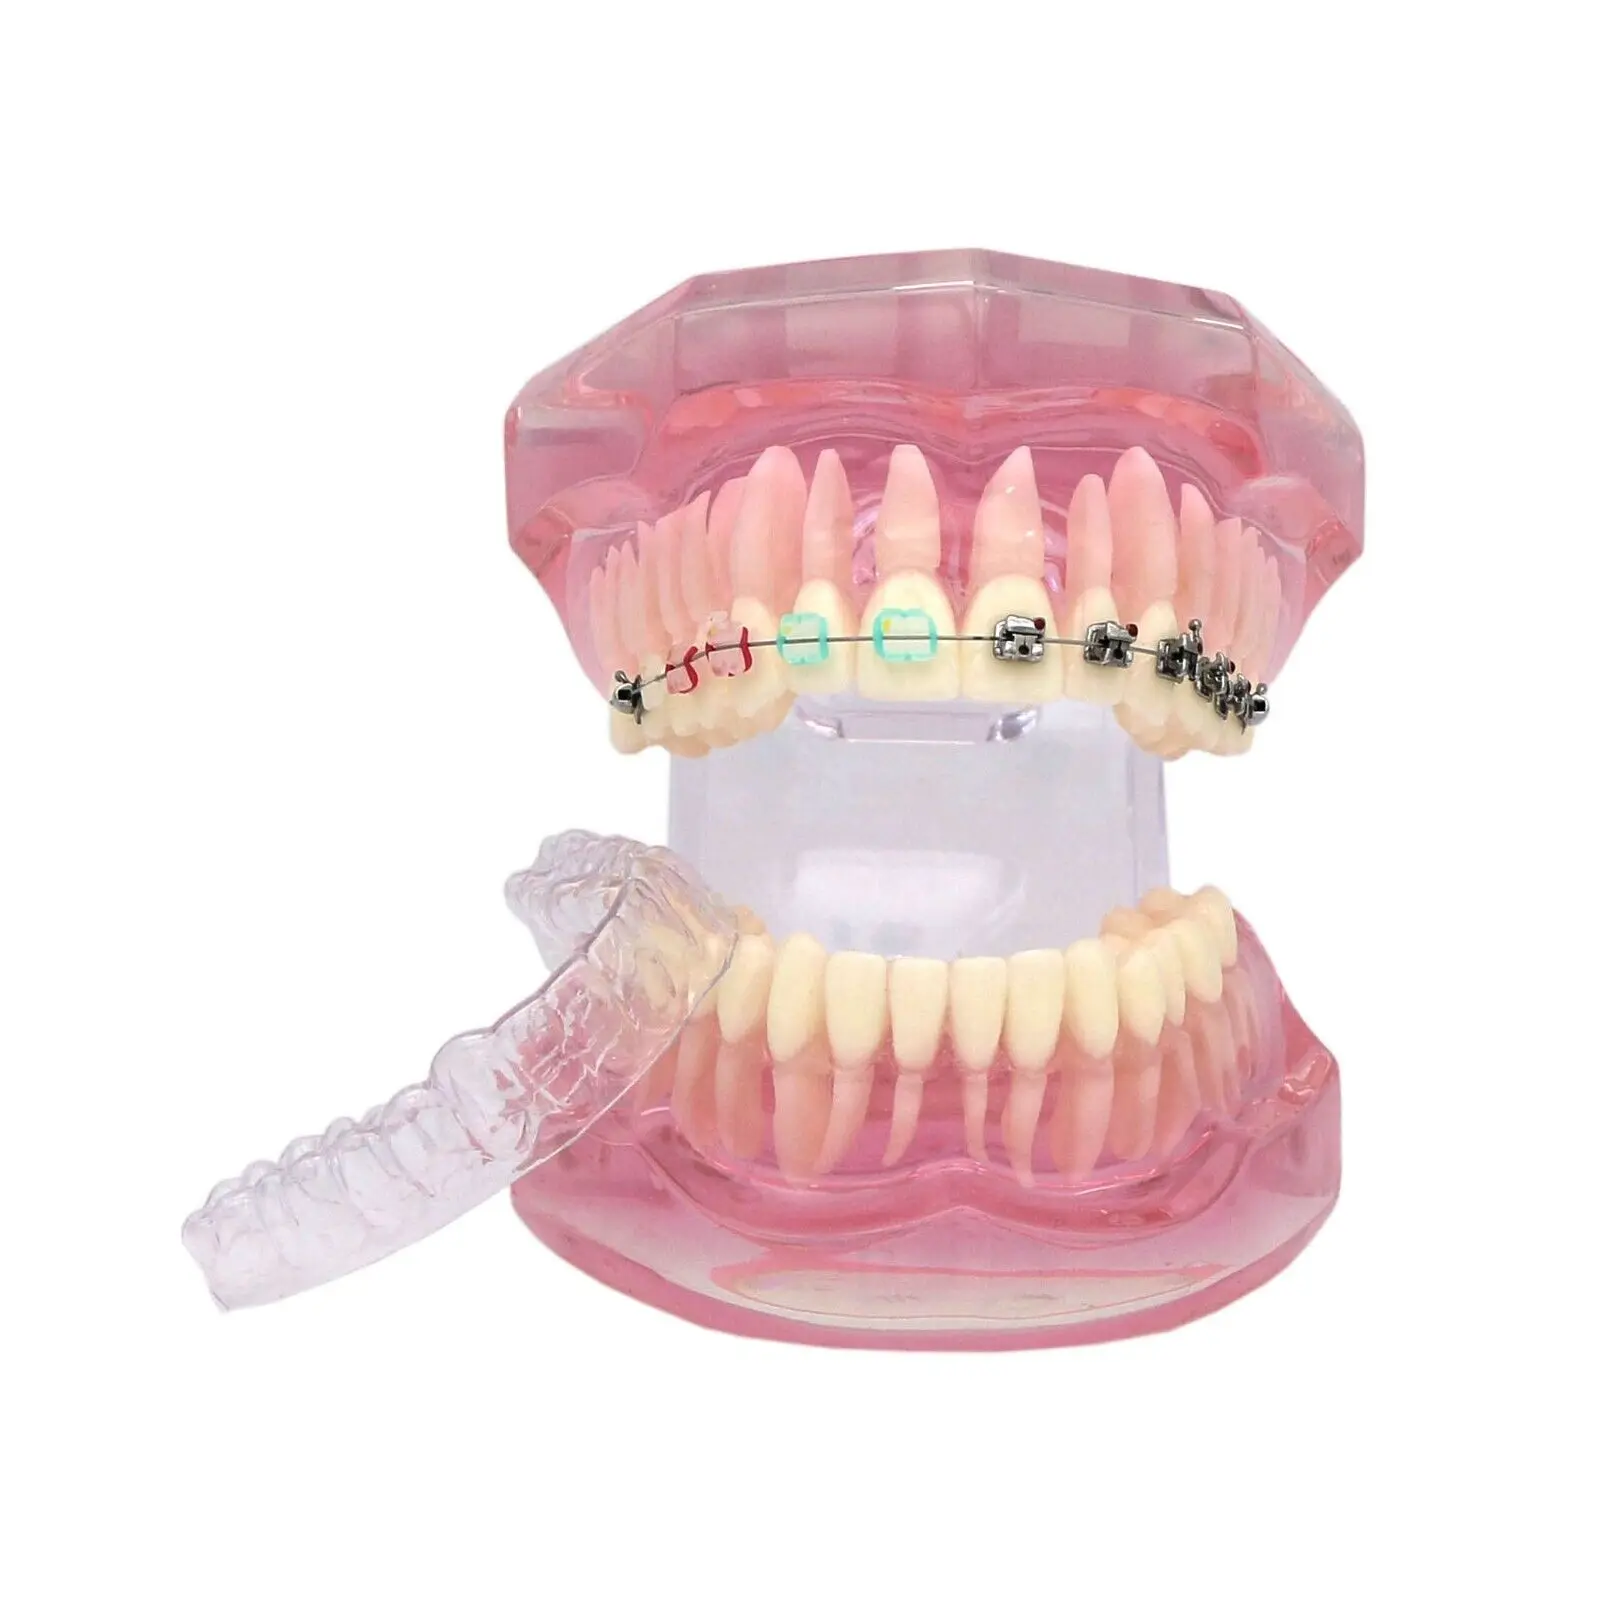 Dental Teeth Orthodontic Model Retainer With Metal Self-ligating Ceramic Bracket